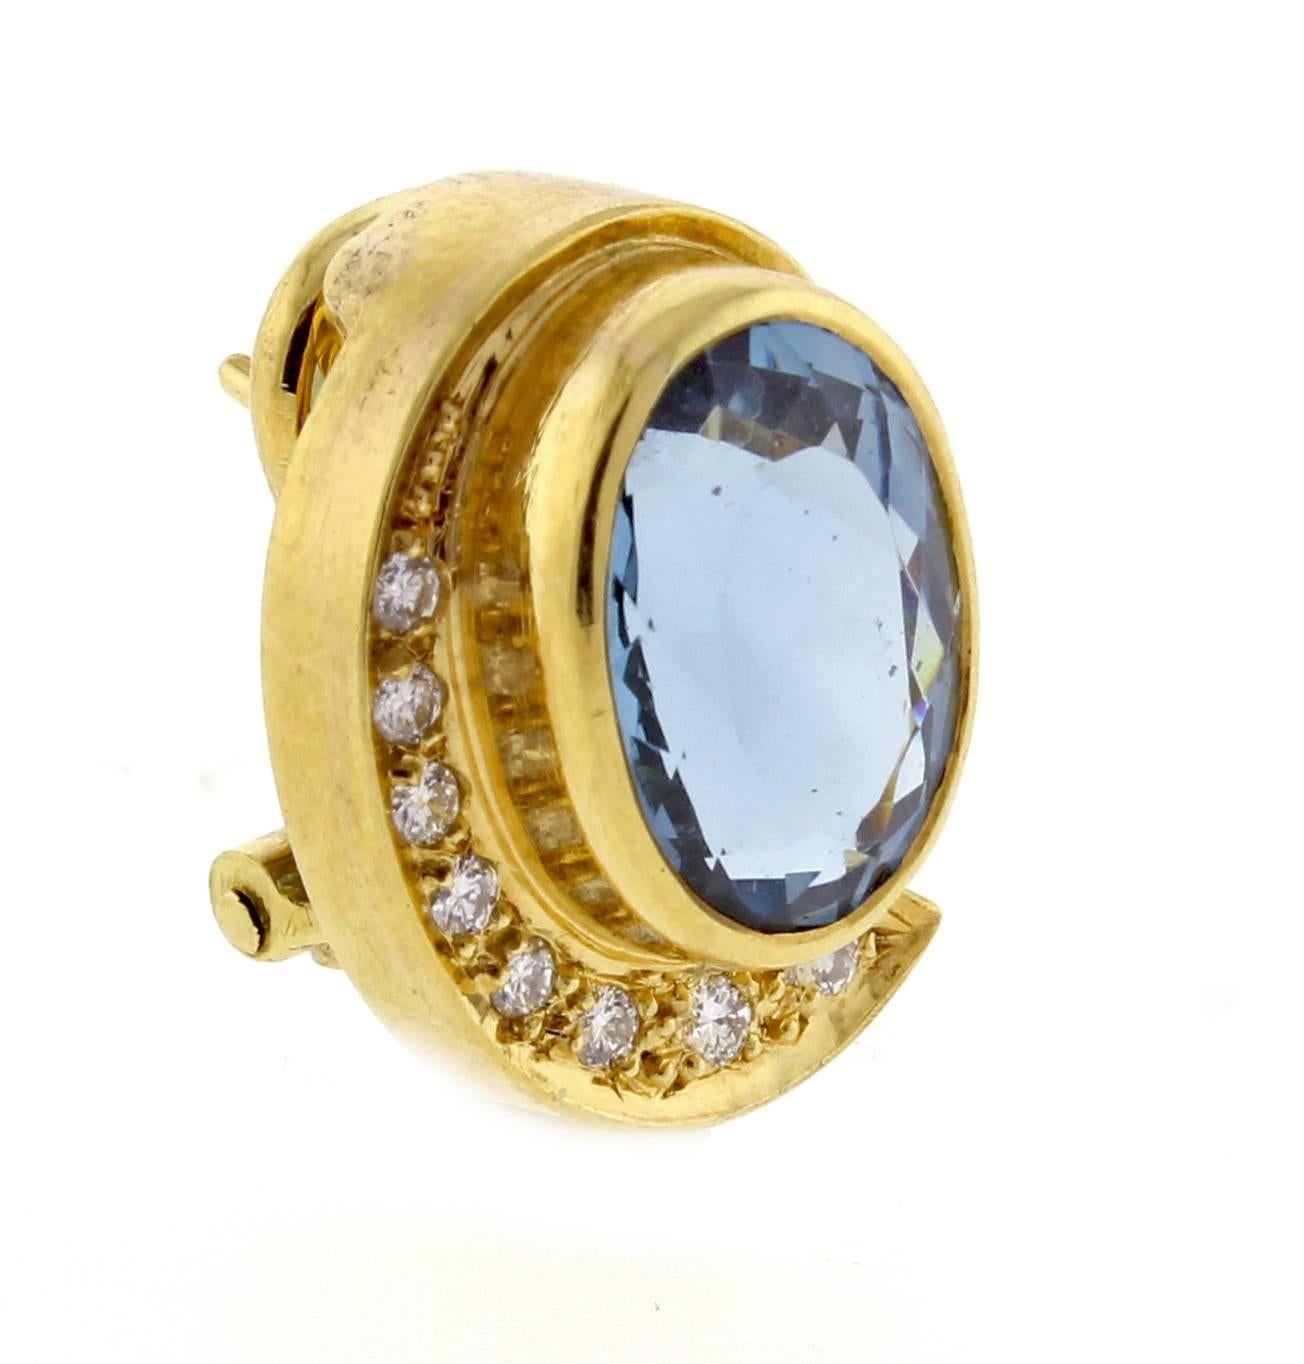 Modernist Burle Marx Oval Aquamarine and Diamond Earrings